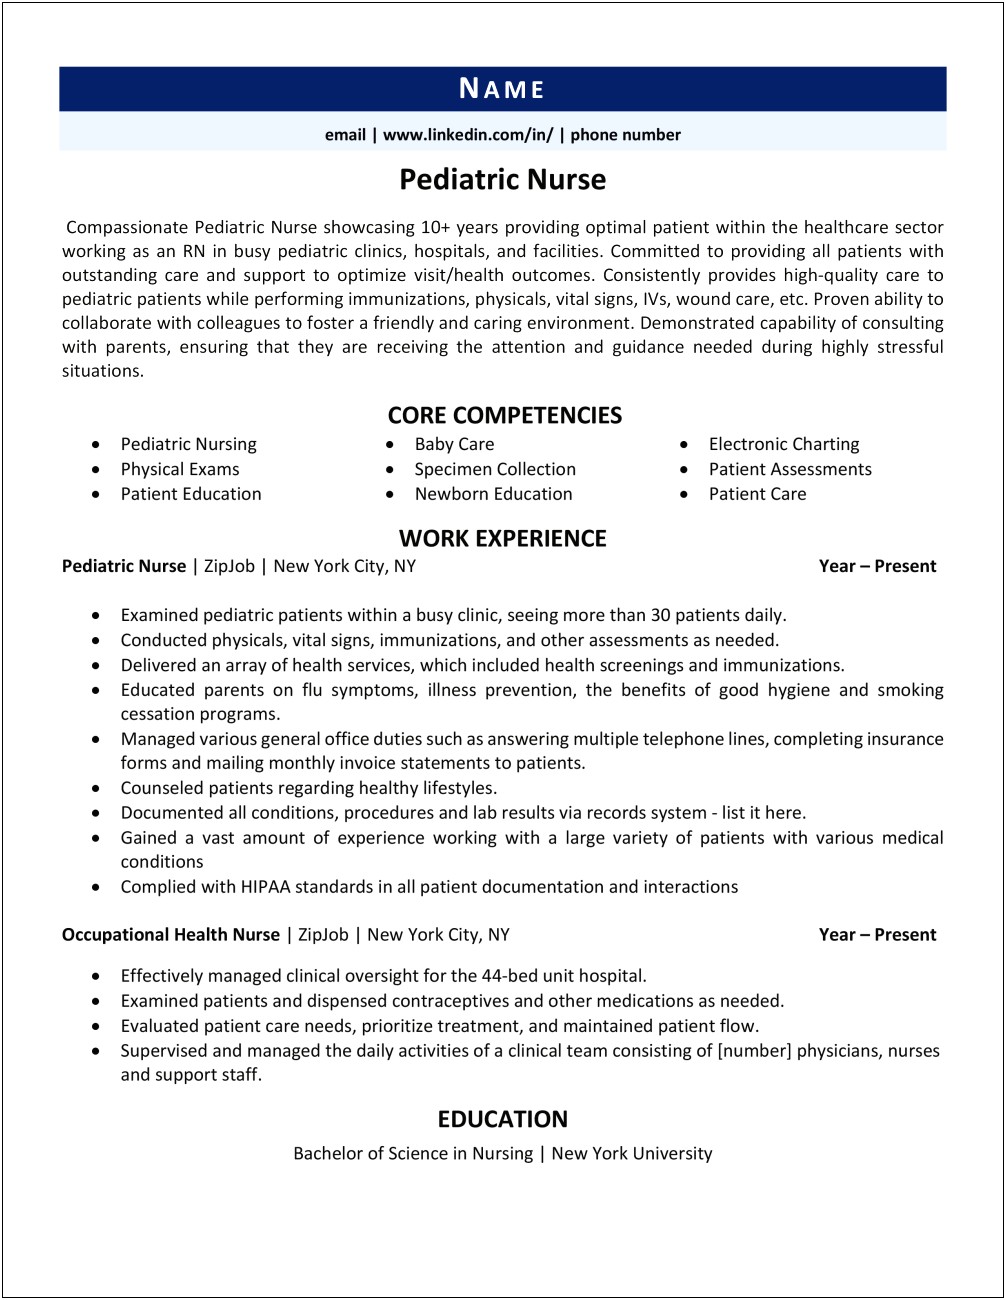 Occupational Health Nurse Resume Example